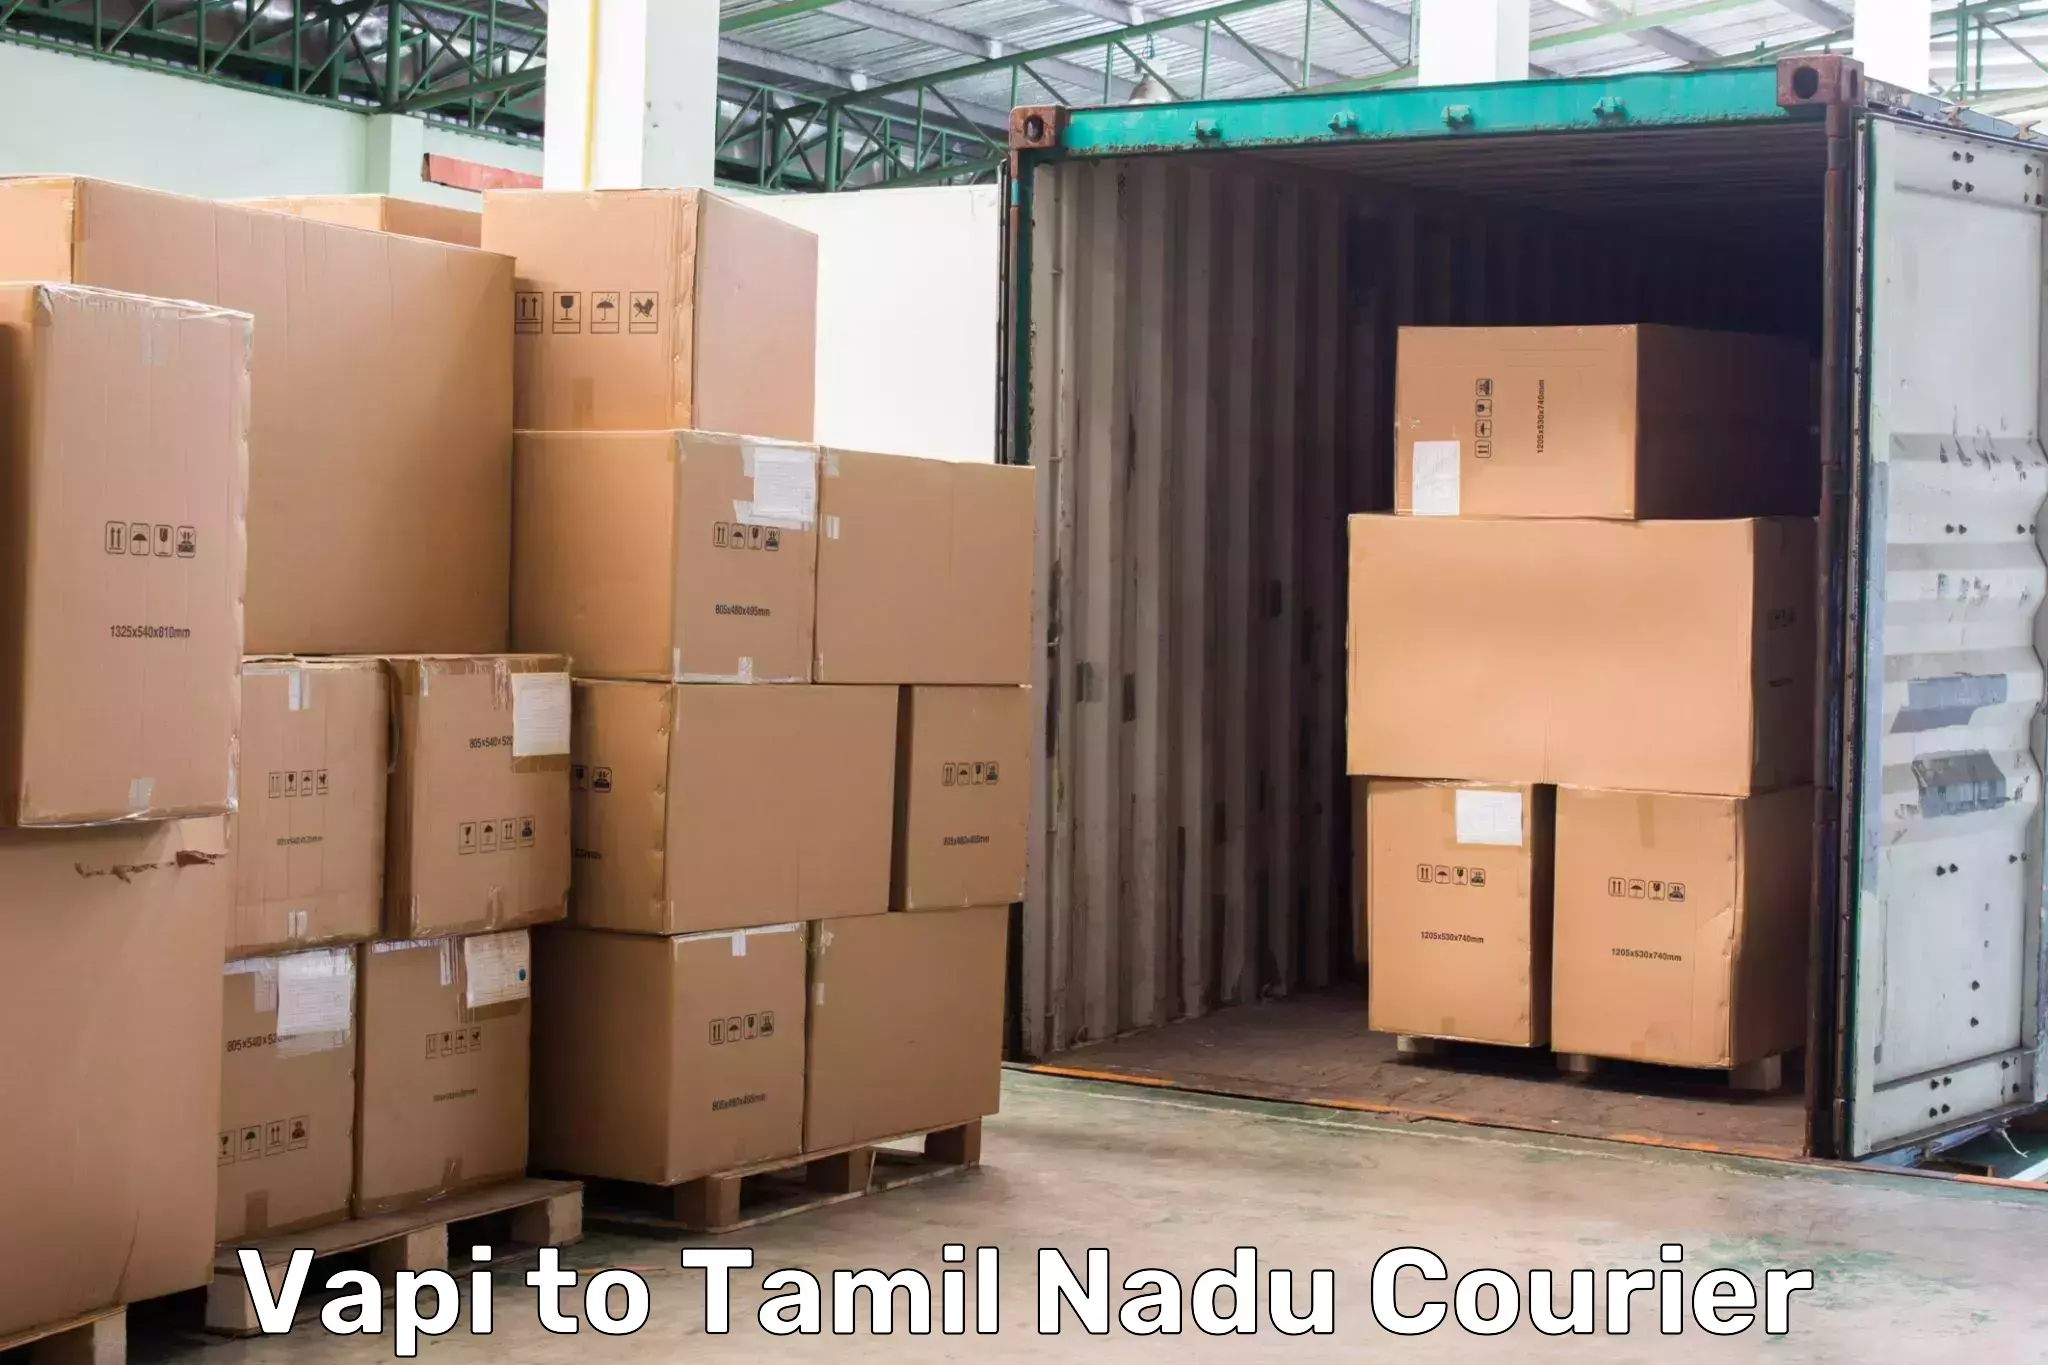 On-demand courier Vapi to Pennagaram